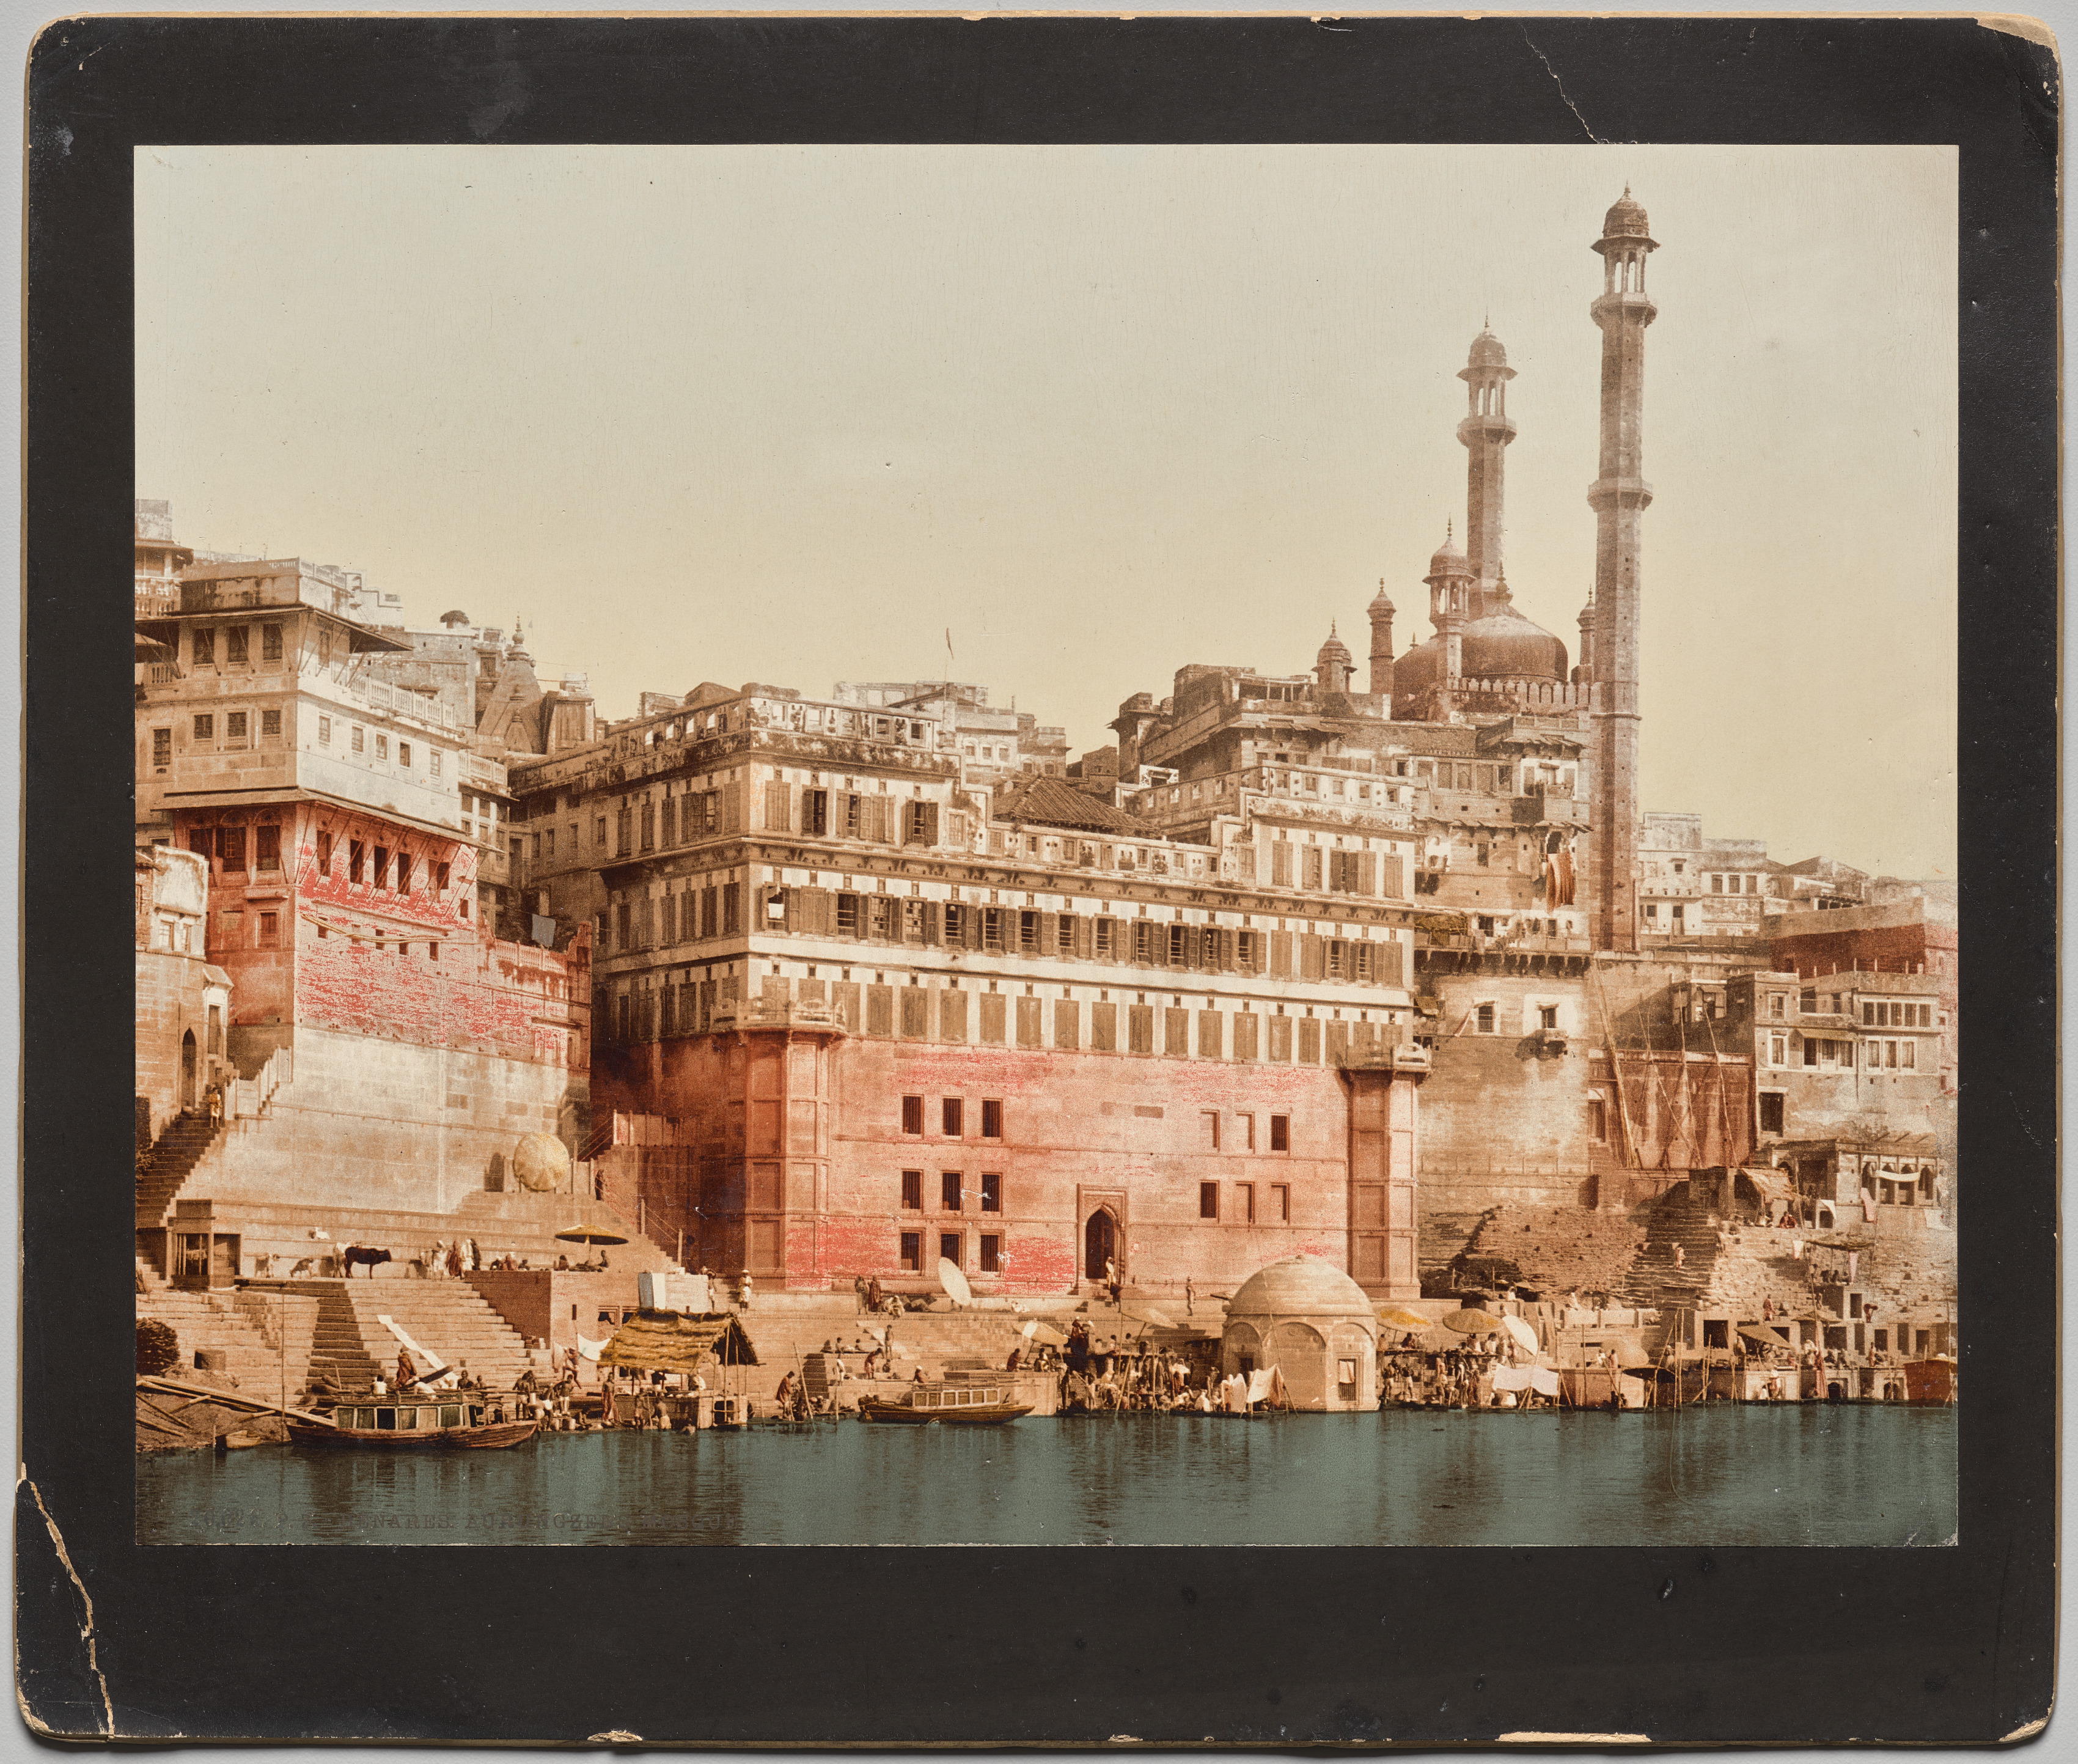 India. Benares. Aurangzeb's Mosque, after a photo by Dr. Kurt Boeck